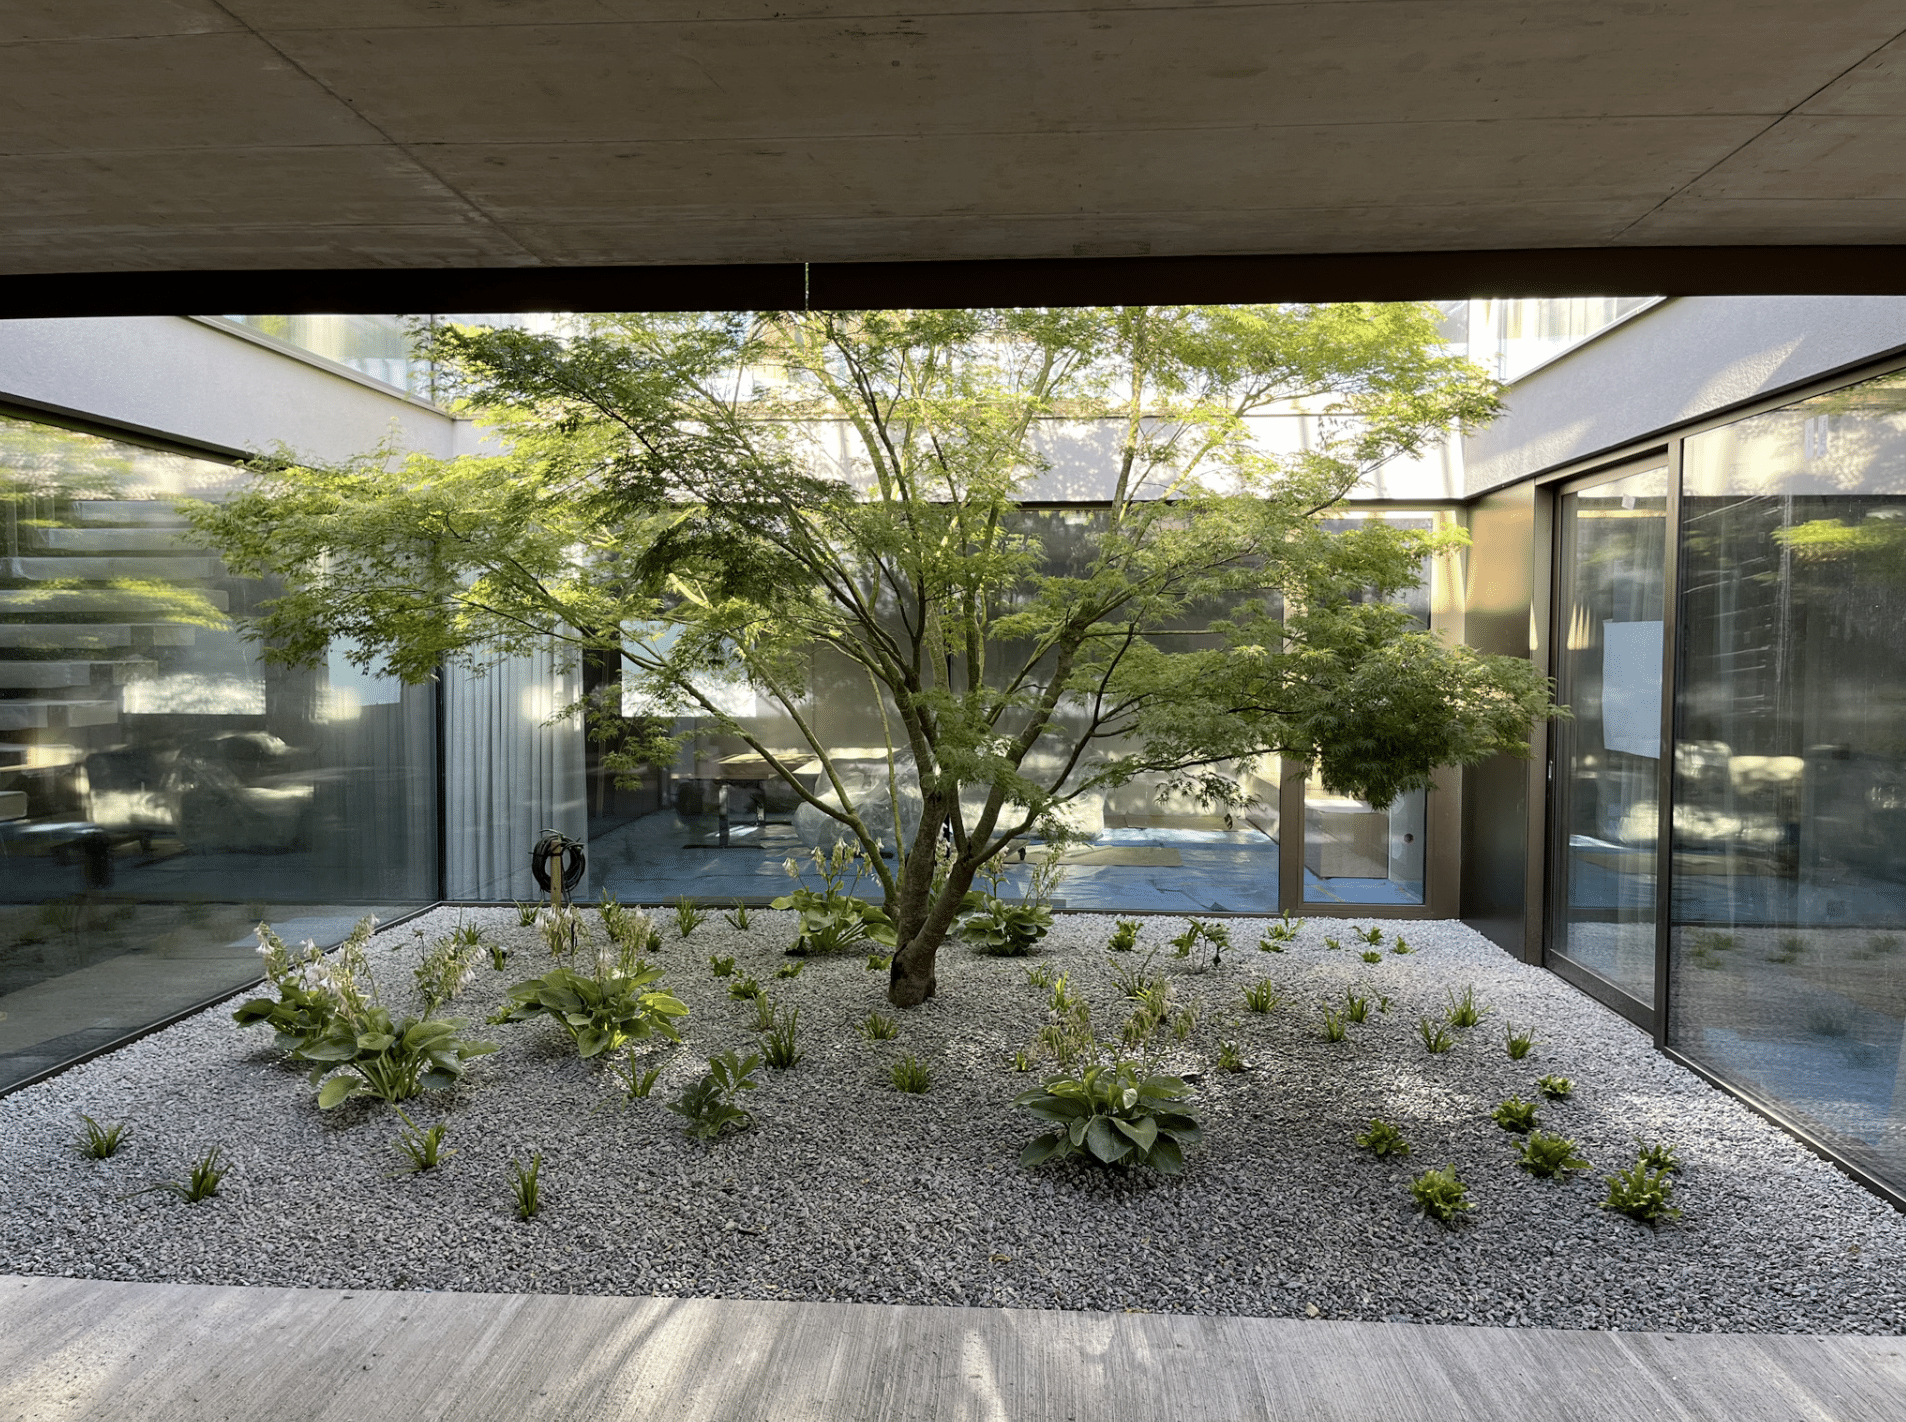 Gartenbau Schmid zeigt den Innenhof eines Gebäudes mit mehreren Bodenpflanzen und einen Baum in der Mitte.